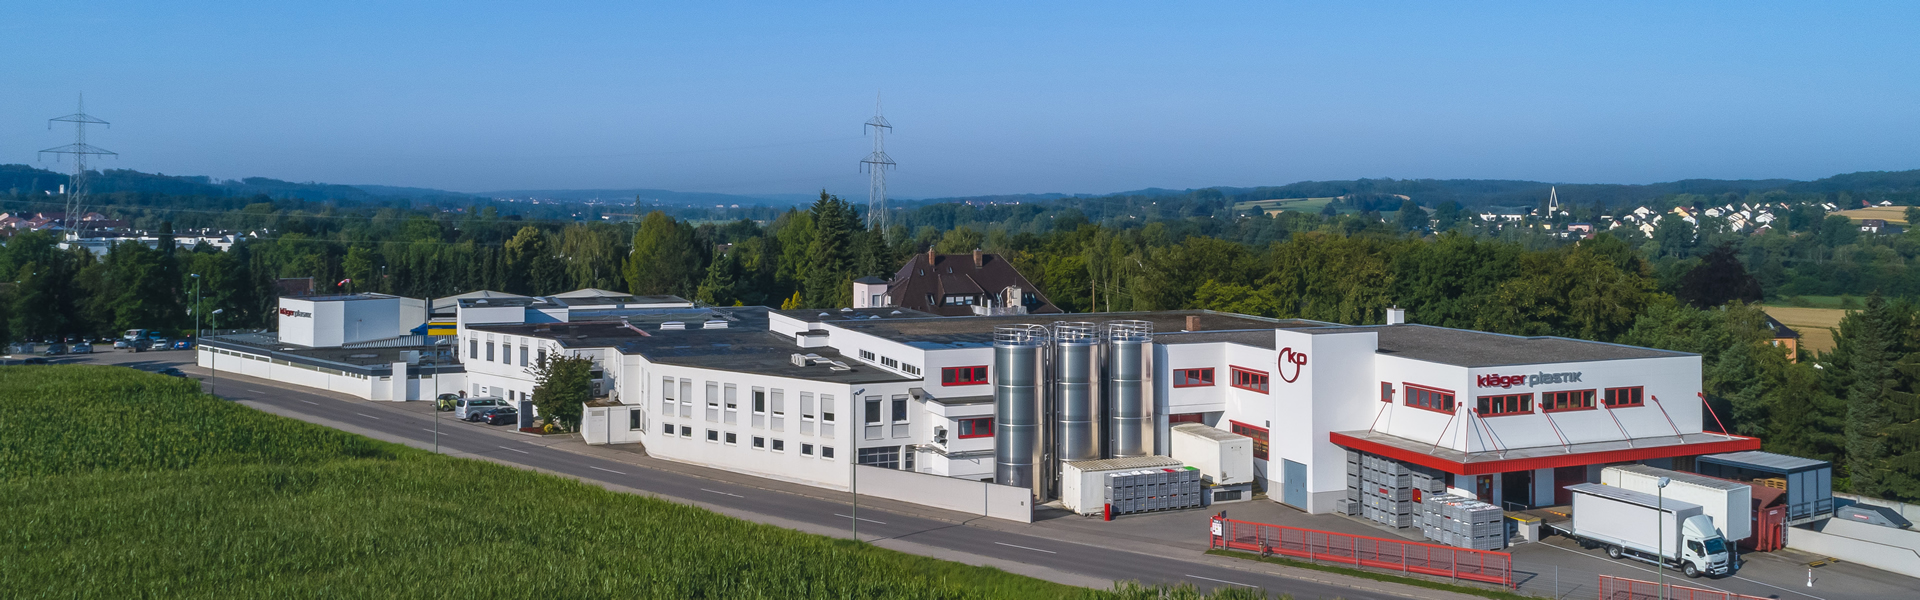 Außenansicht der Vema GmbH & Co. KG., Tochterunternehmen der Kläger Group, im bayrischen Neusäß